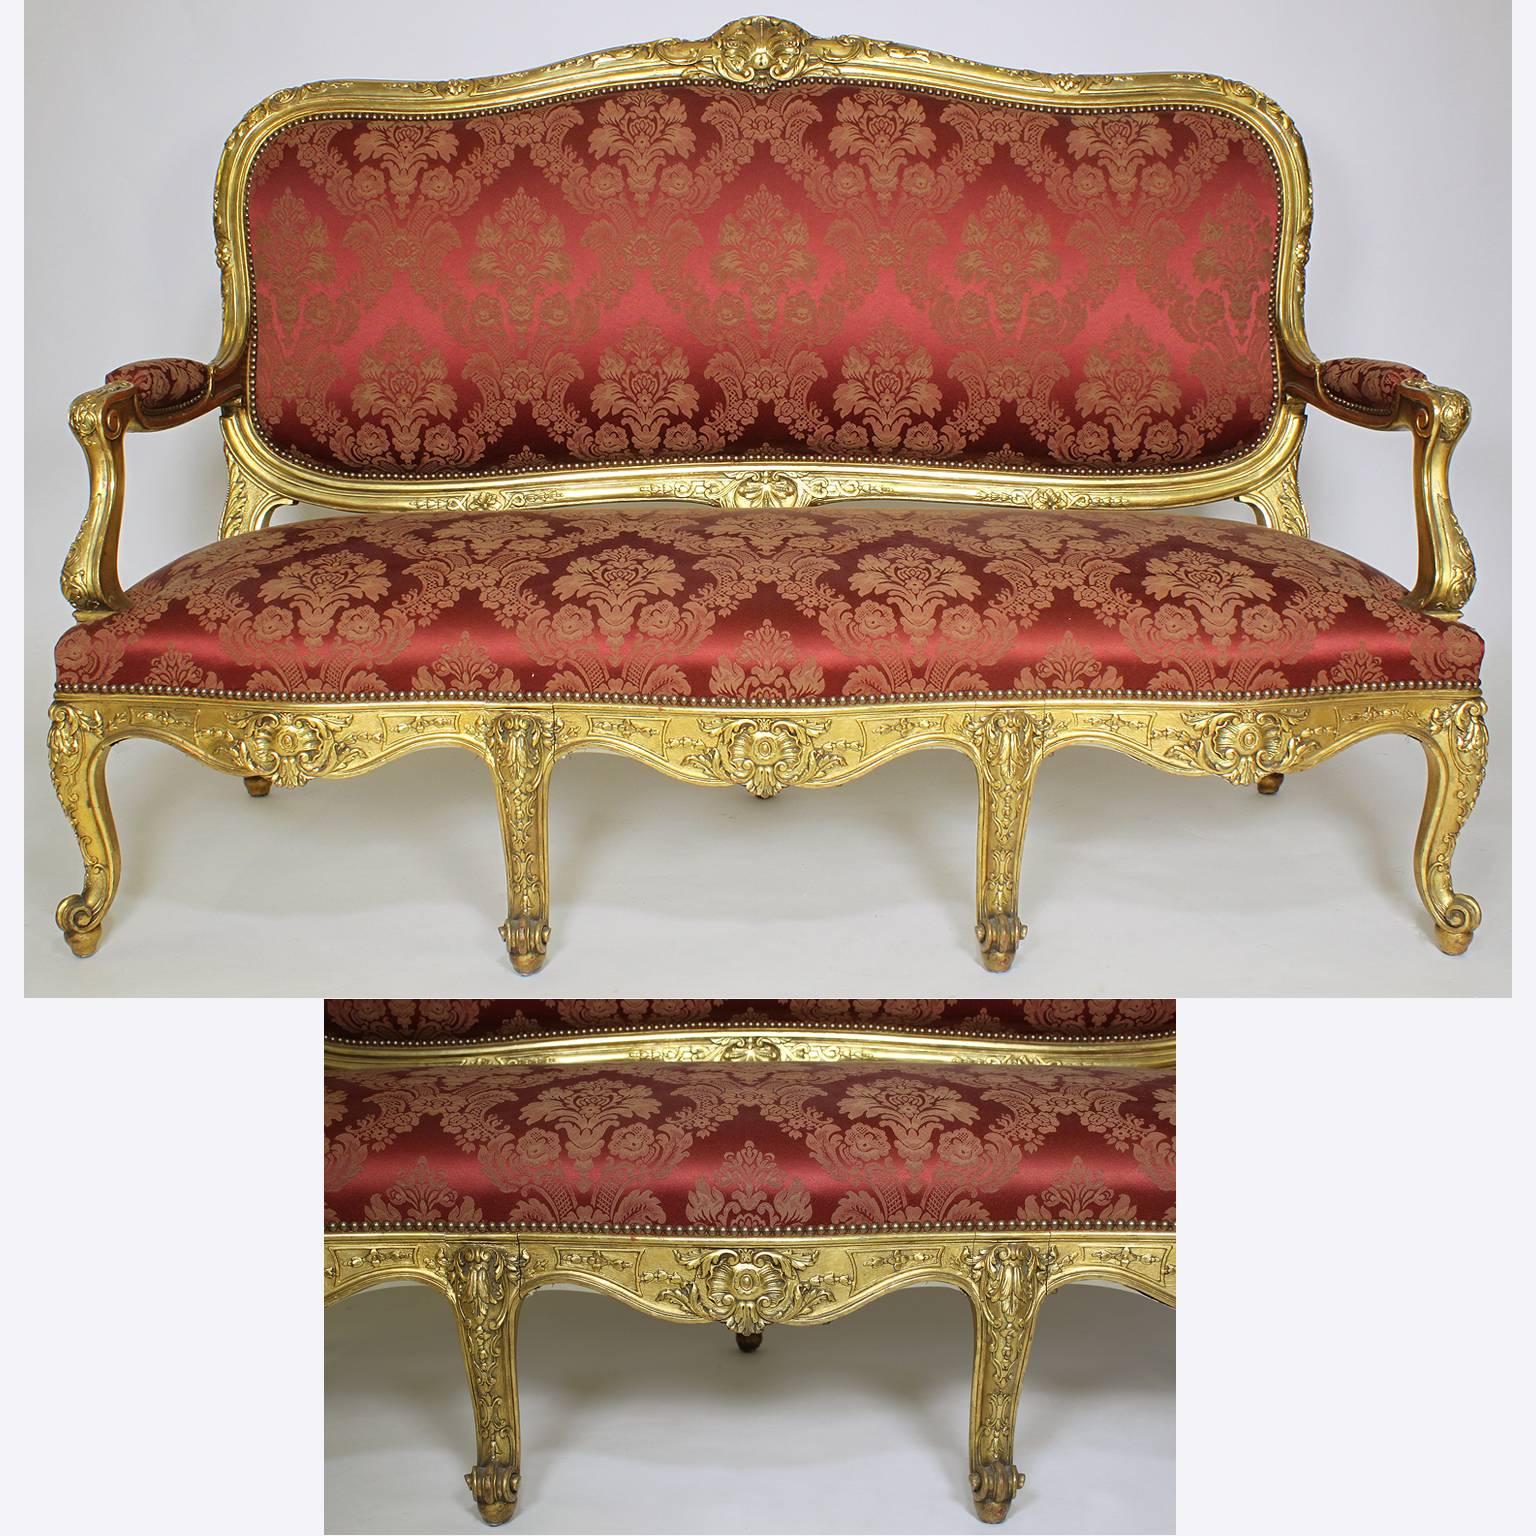 Très bel ensemble de salon français du XIXe siècle de style Louis XV en bois sculpté et doré, comprenant un canapé et deux fauteuils à la reine, tous récemment retapissés et dotés de leur dorure d'origine, Paris, vers 1890.

Mesures : Longueur du